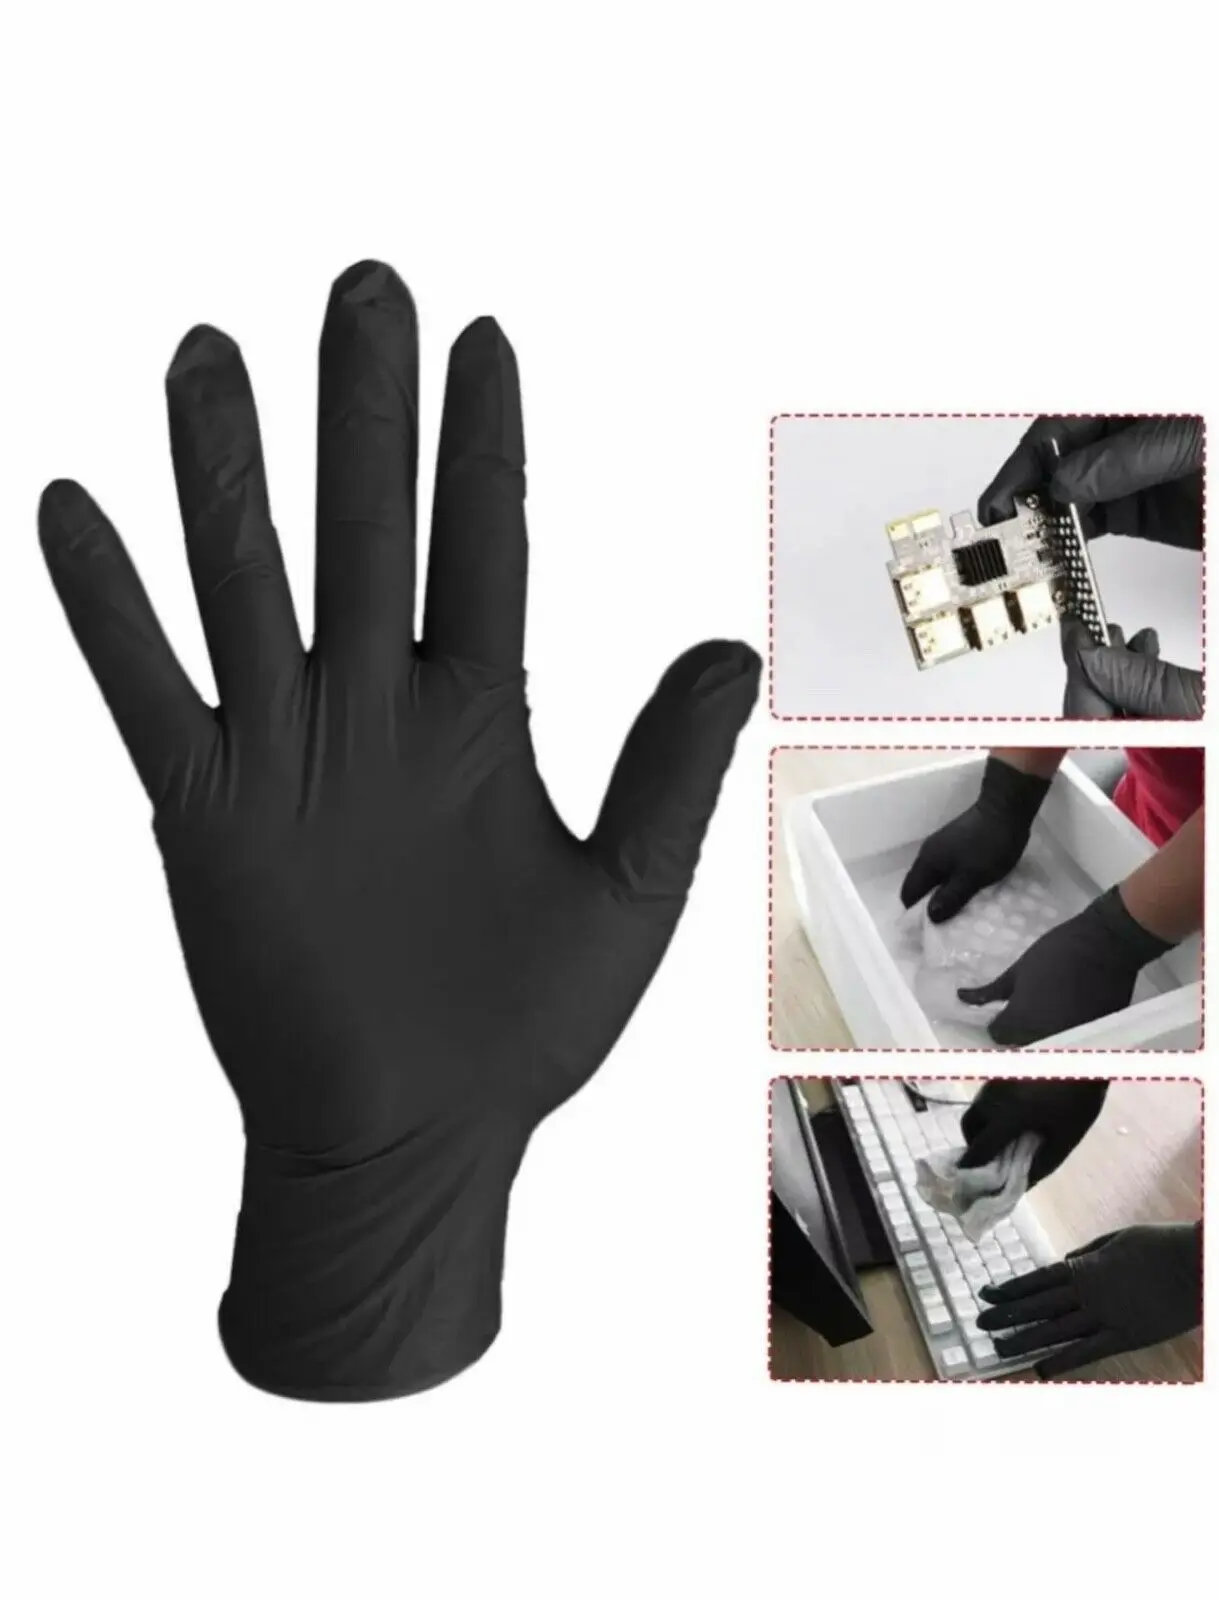 wholesale disposable vinyl gloves